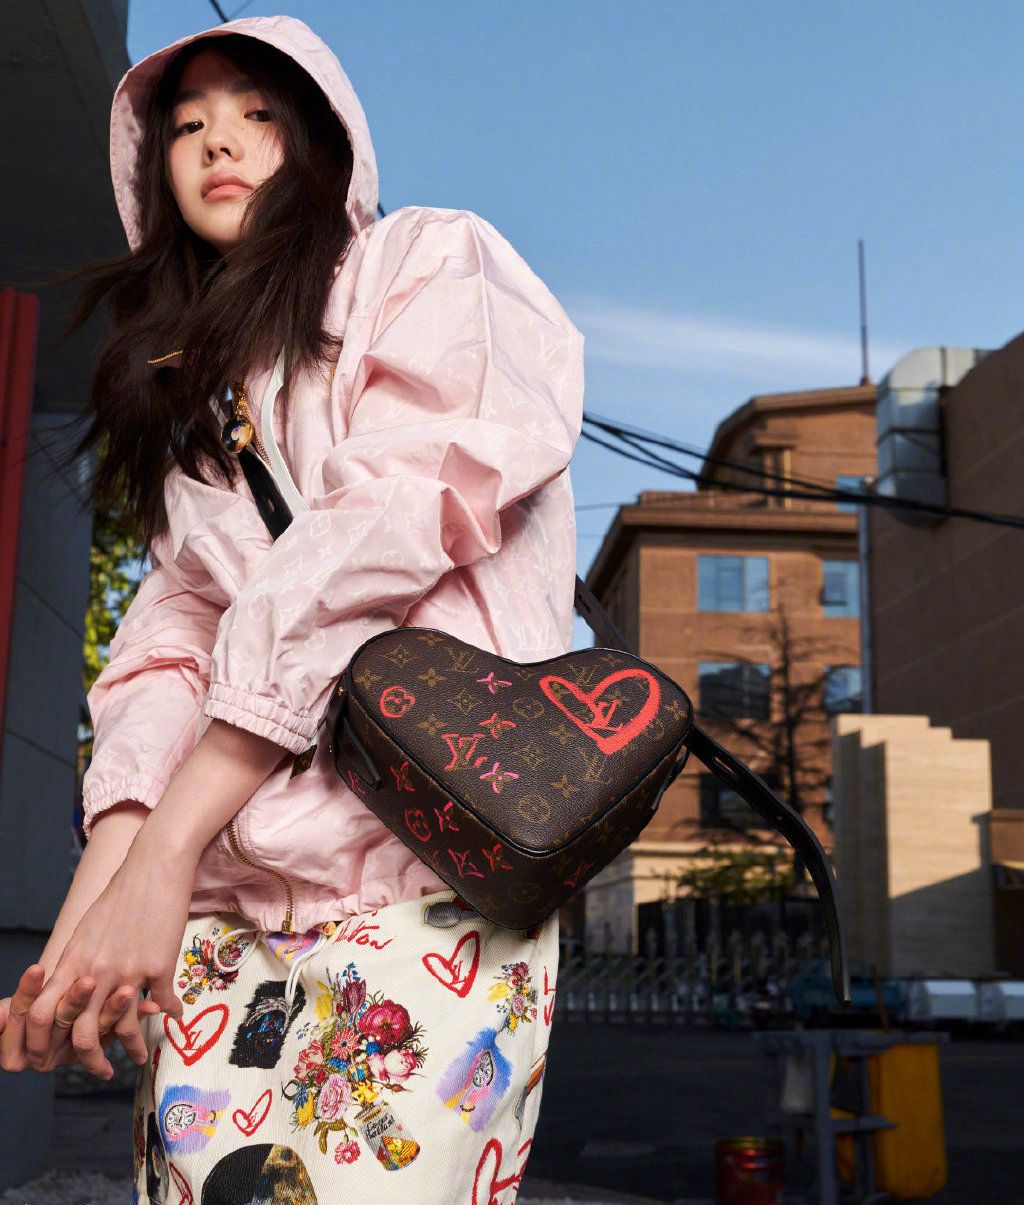 刘浩存酷美嘻哈彩色印花套装穿搭慵懒与帅气街拍图片第1张